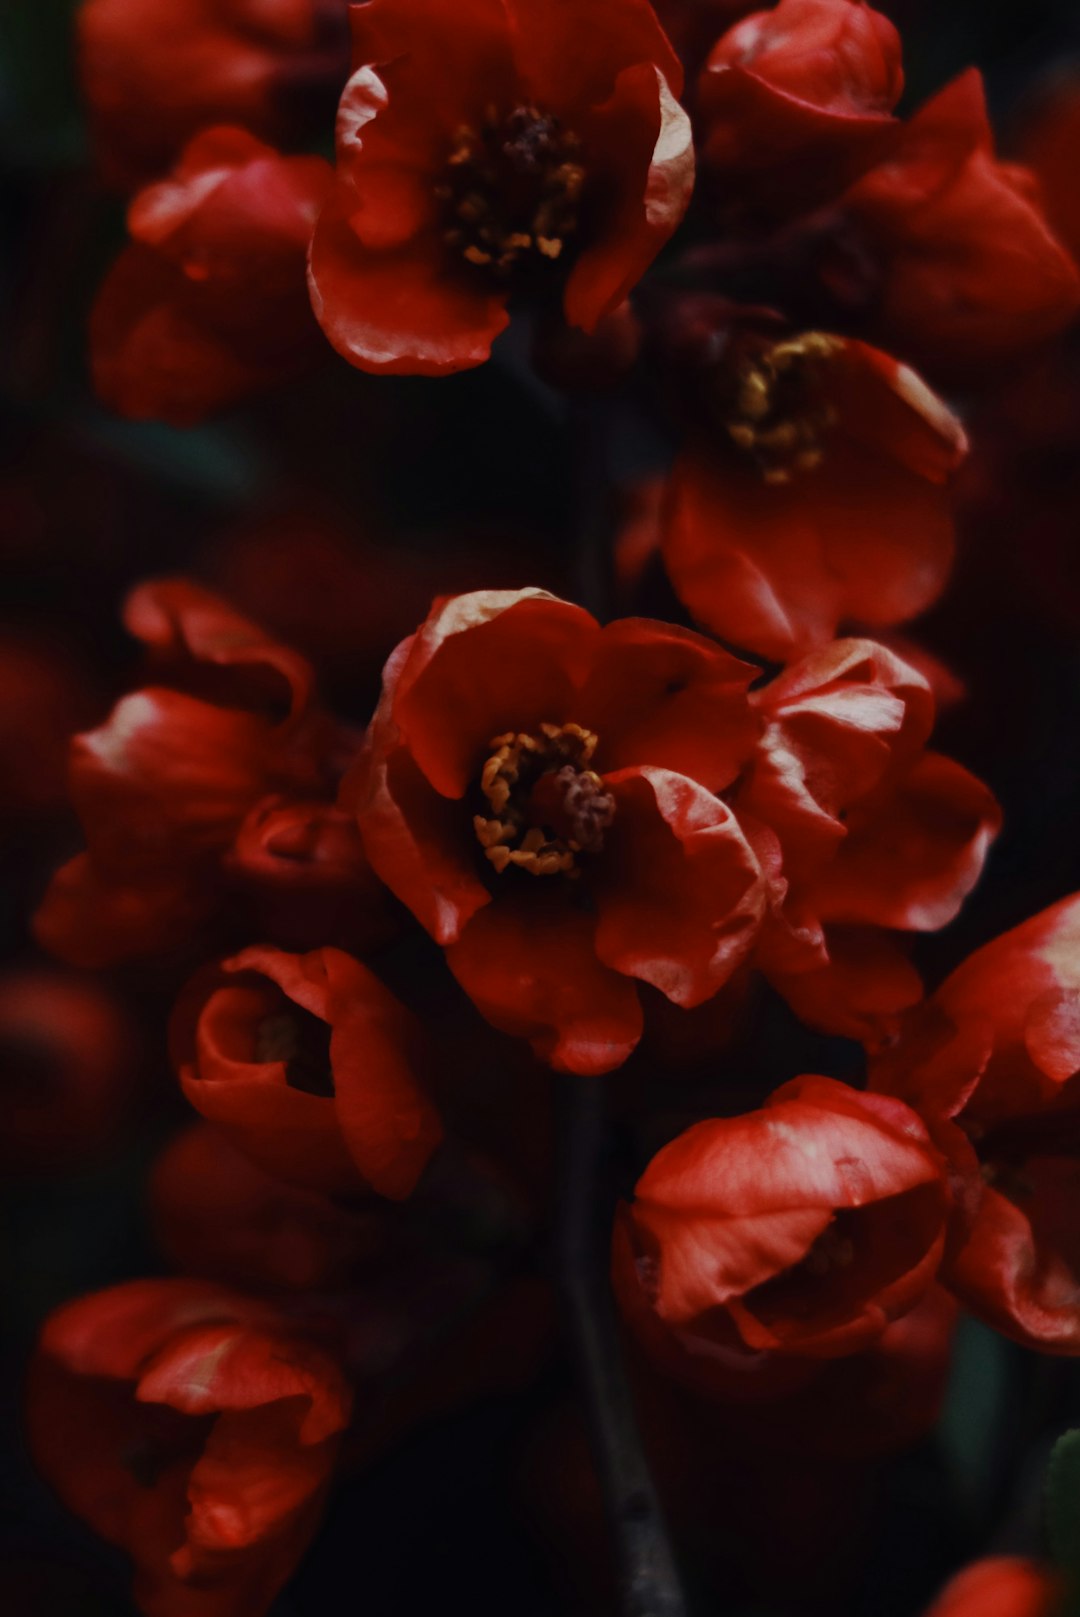 red flower in macro shot